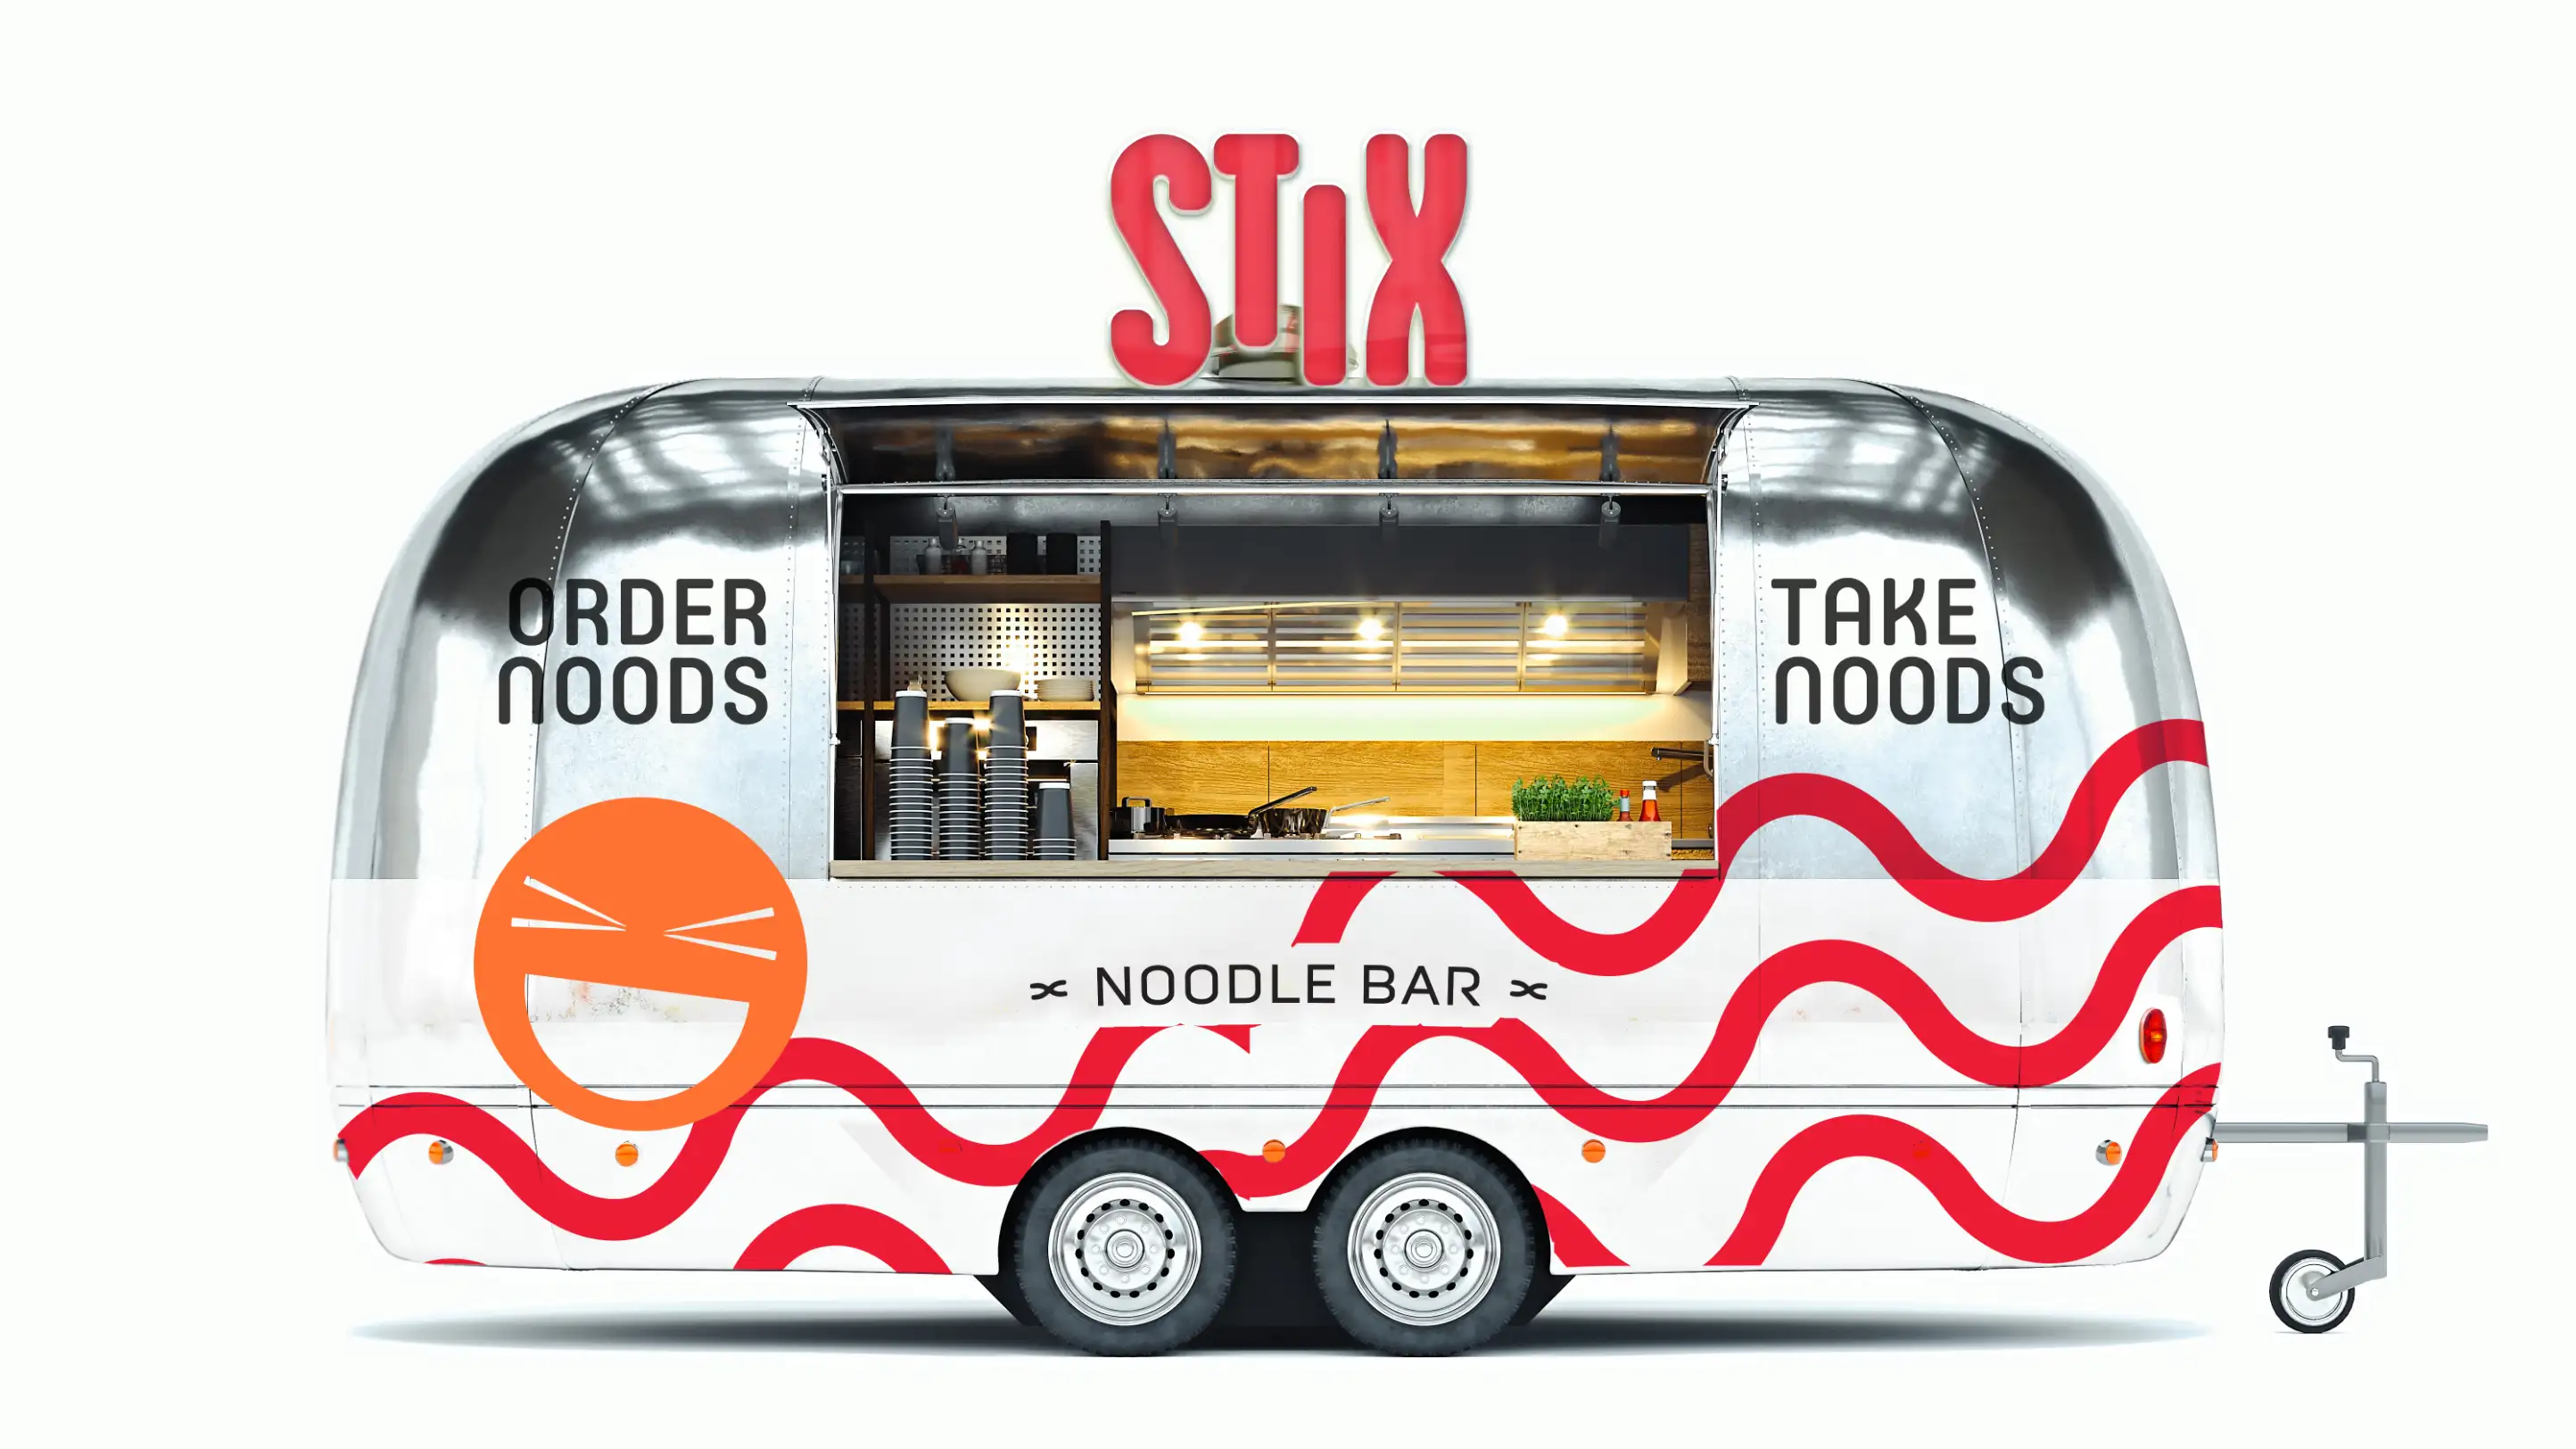 Stix Noodle Bar trailer design.